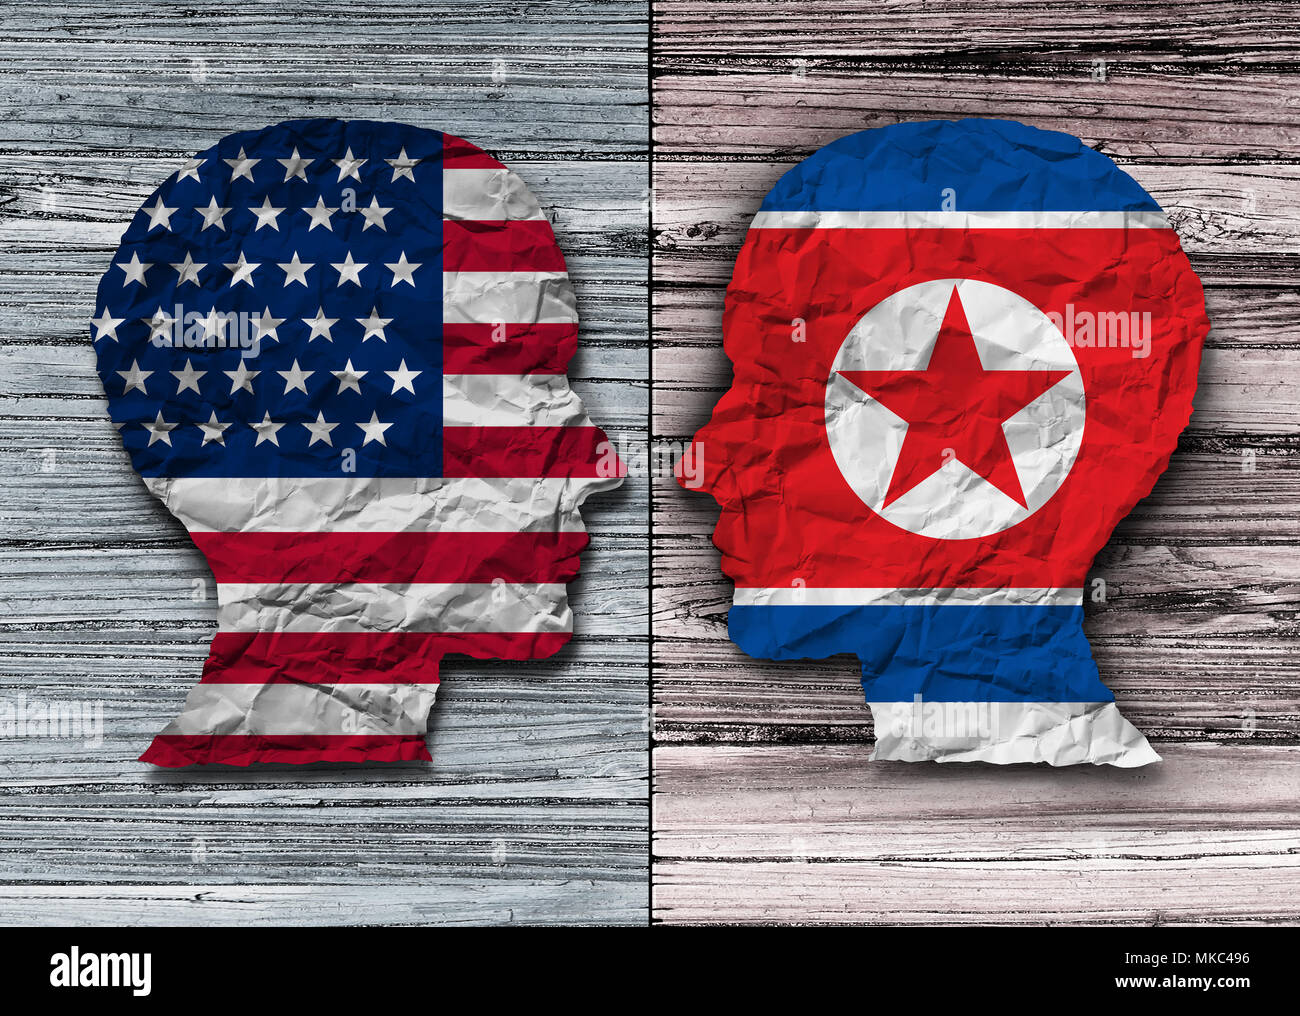 Americani e coreani del nord accordo degli Stati Uniti e la Corea del Nord la diplomazia accordo riunione diplomatica con Pyongyang e Washington. Foto Stock